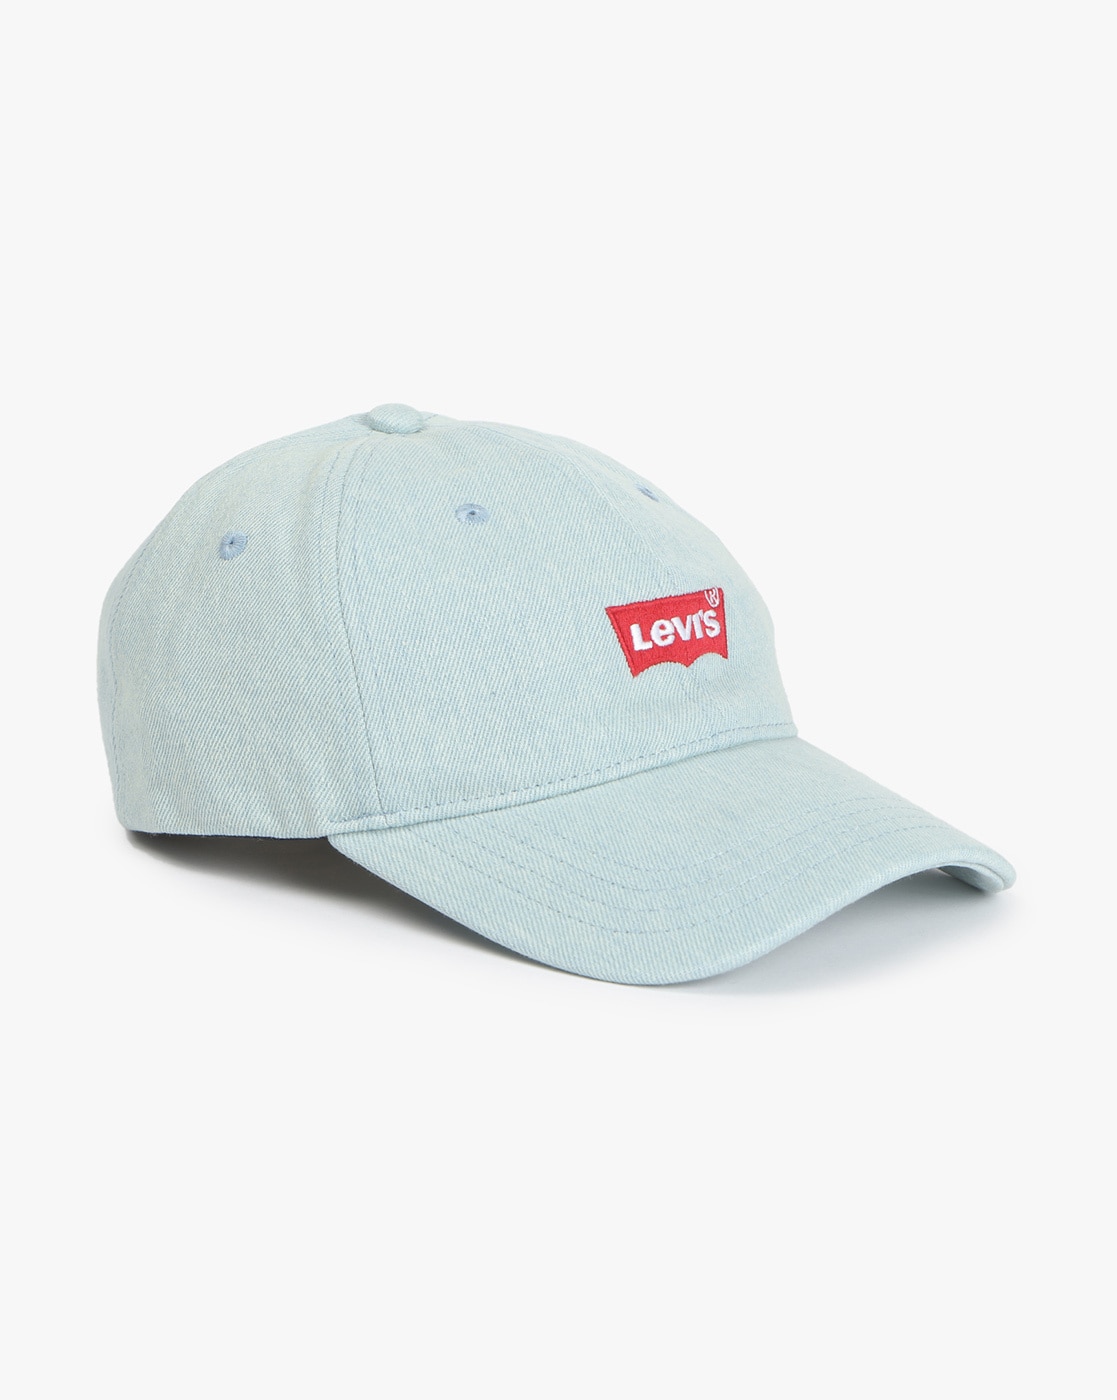 Buy Blue Caps \u0026 Hats for Men by LEVIS 